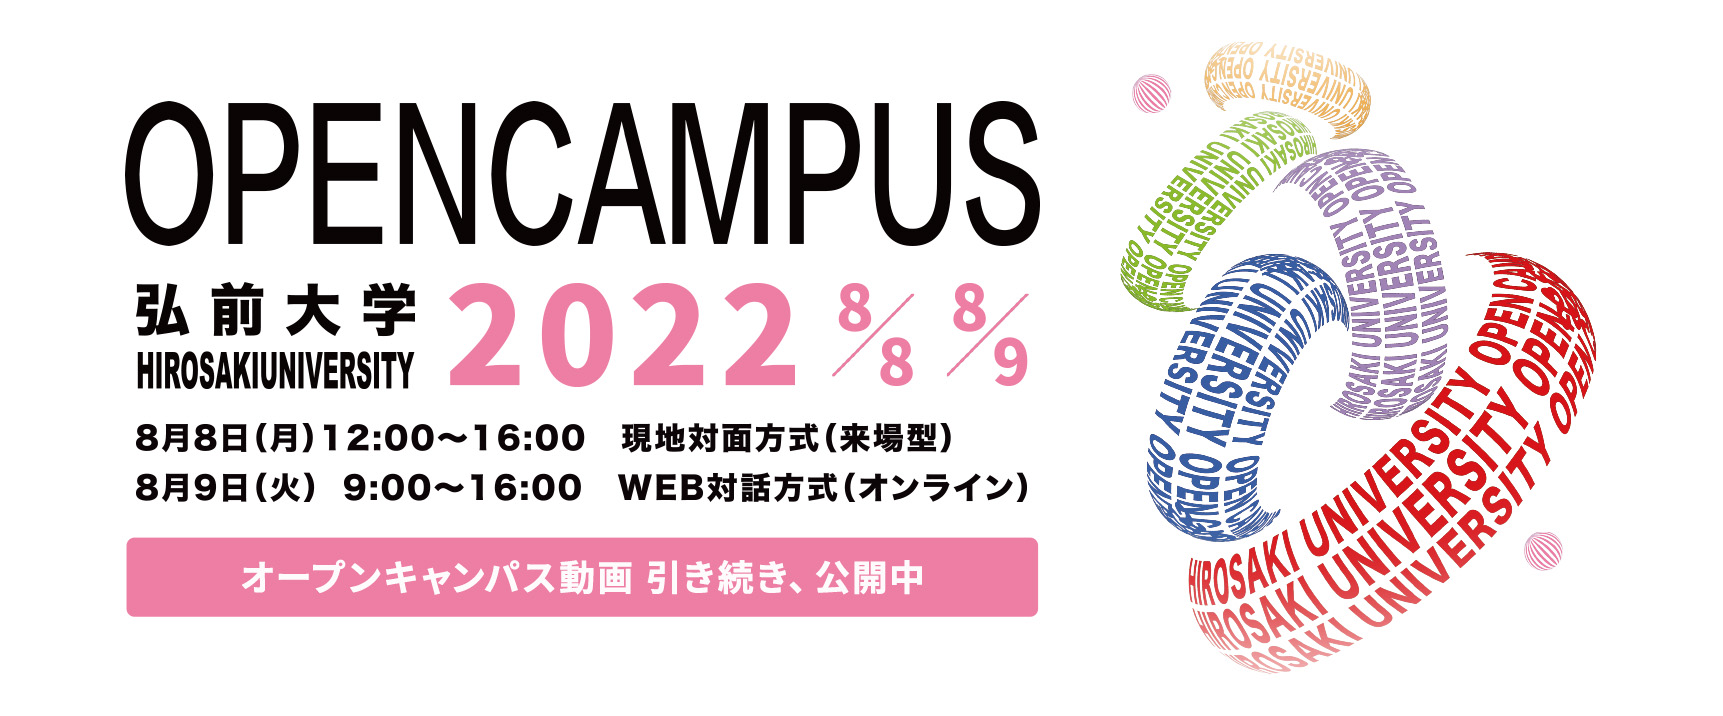 弘前大学オープンキャンパス2022